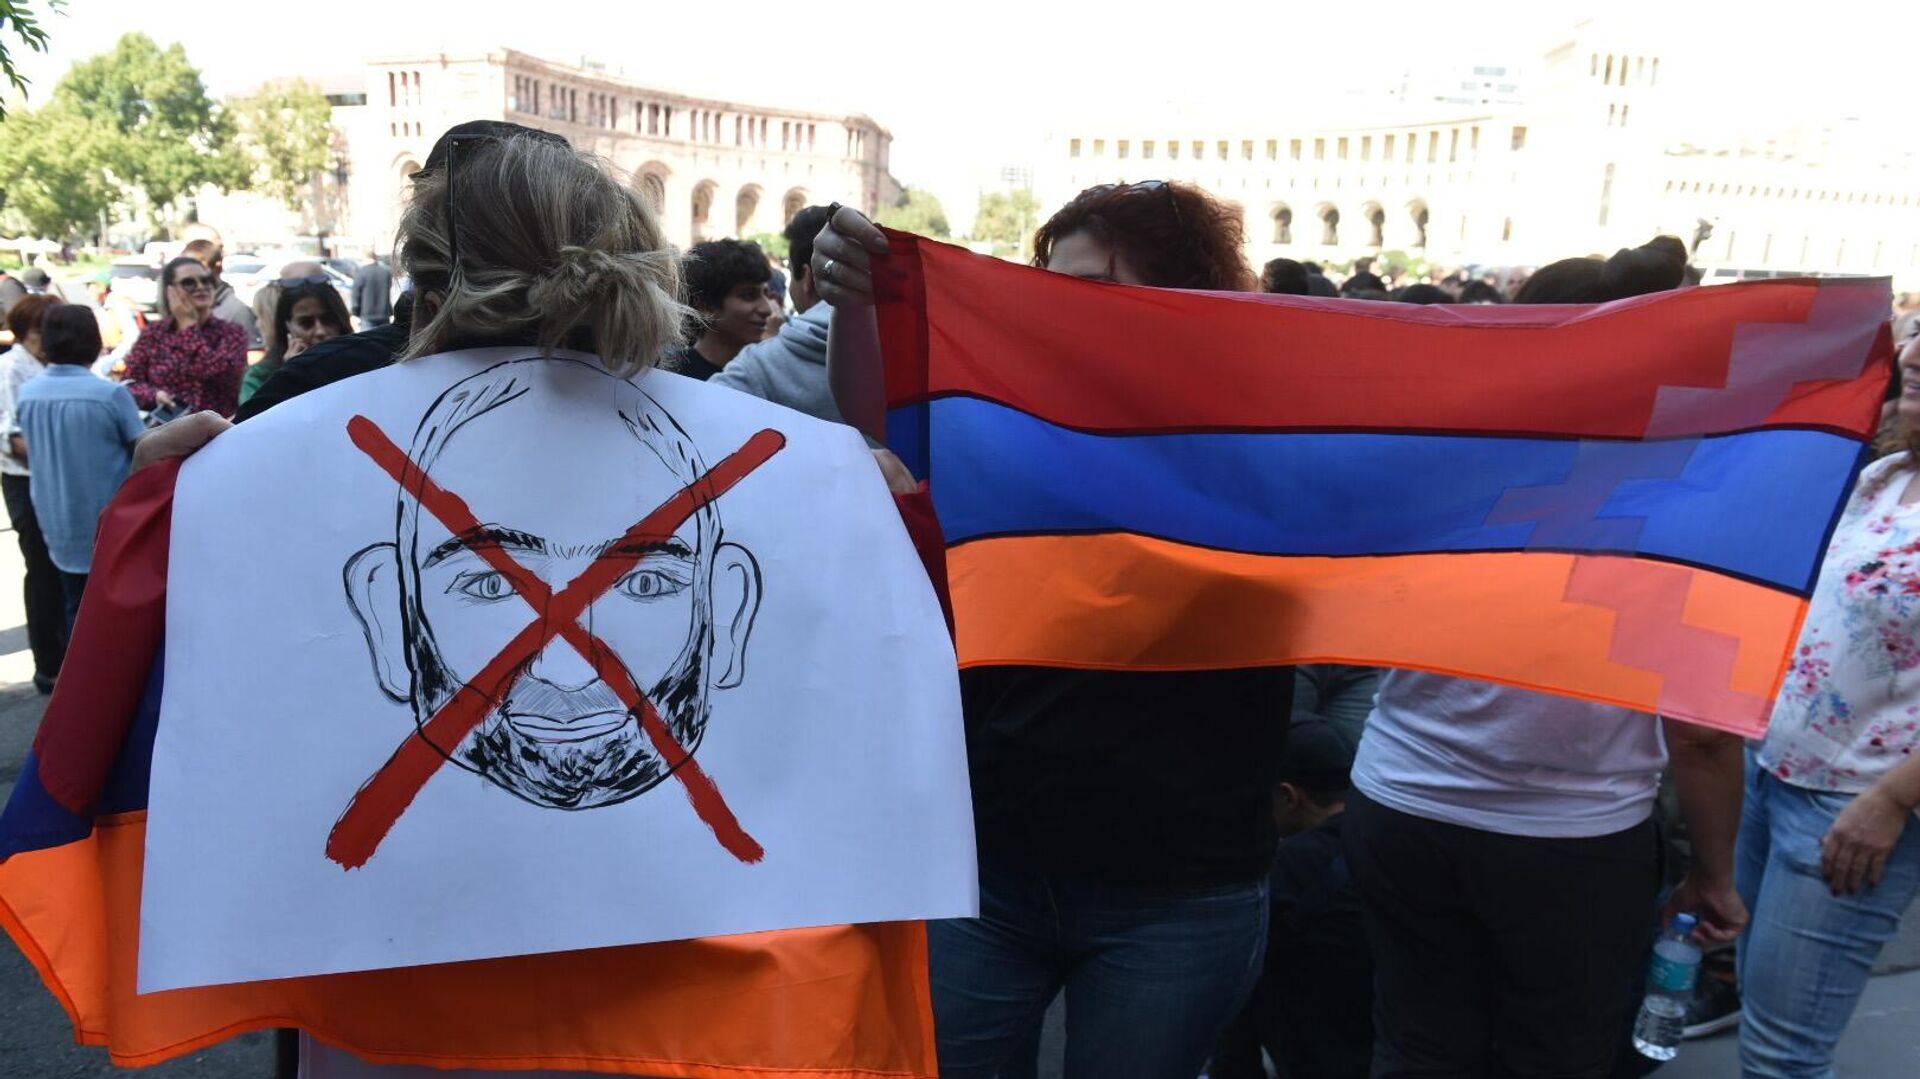 В Ереване начались аресты участников антиправительственных митингов